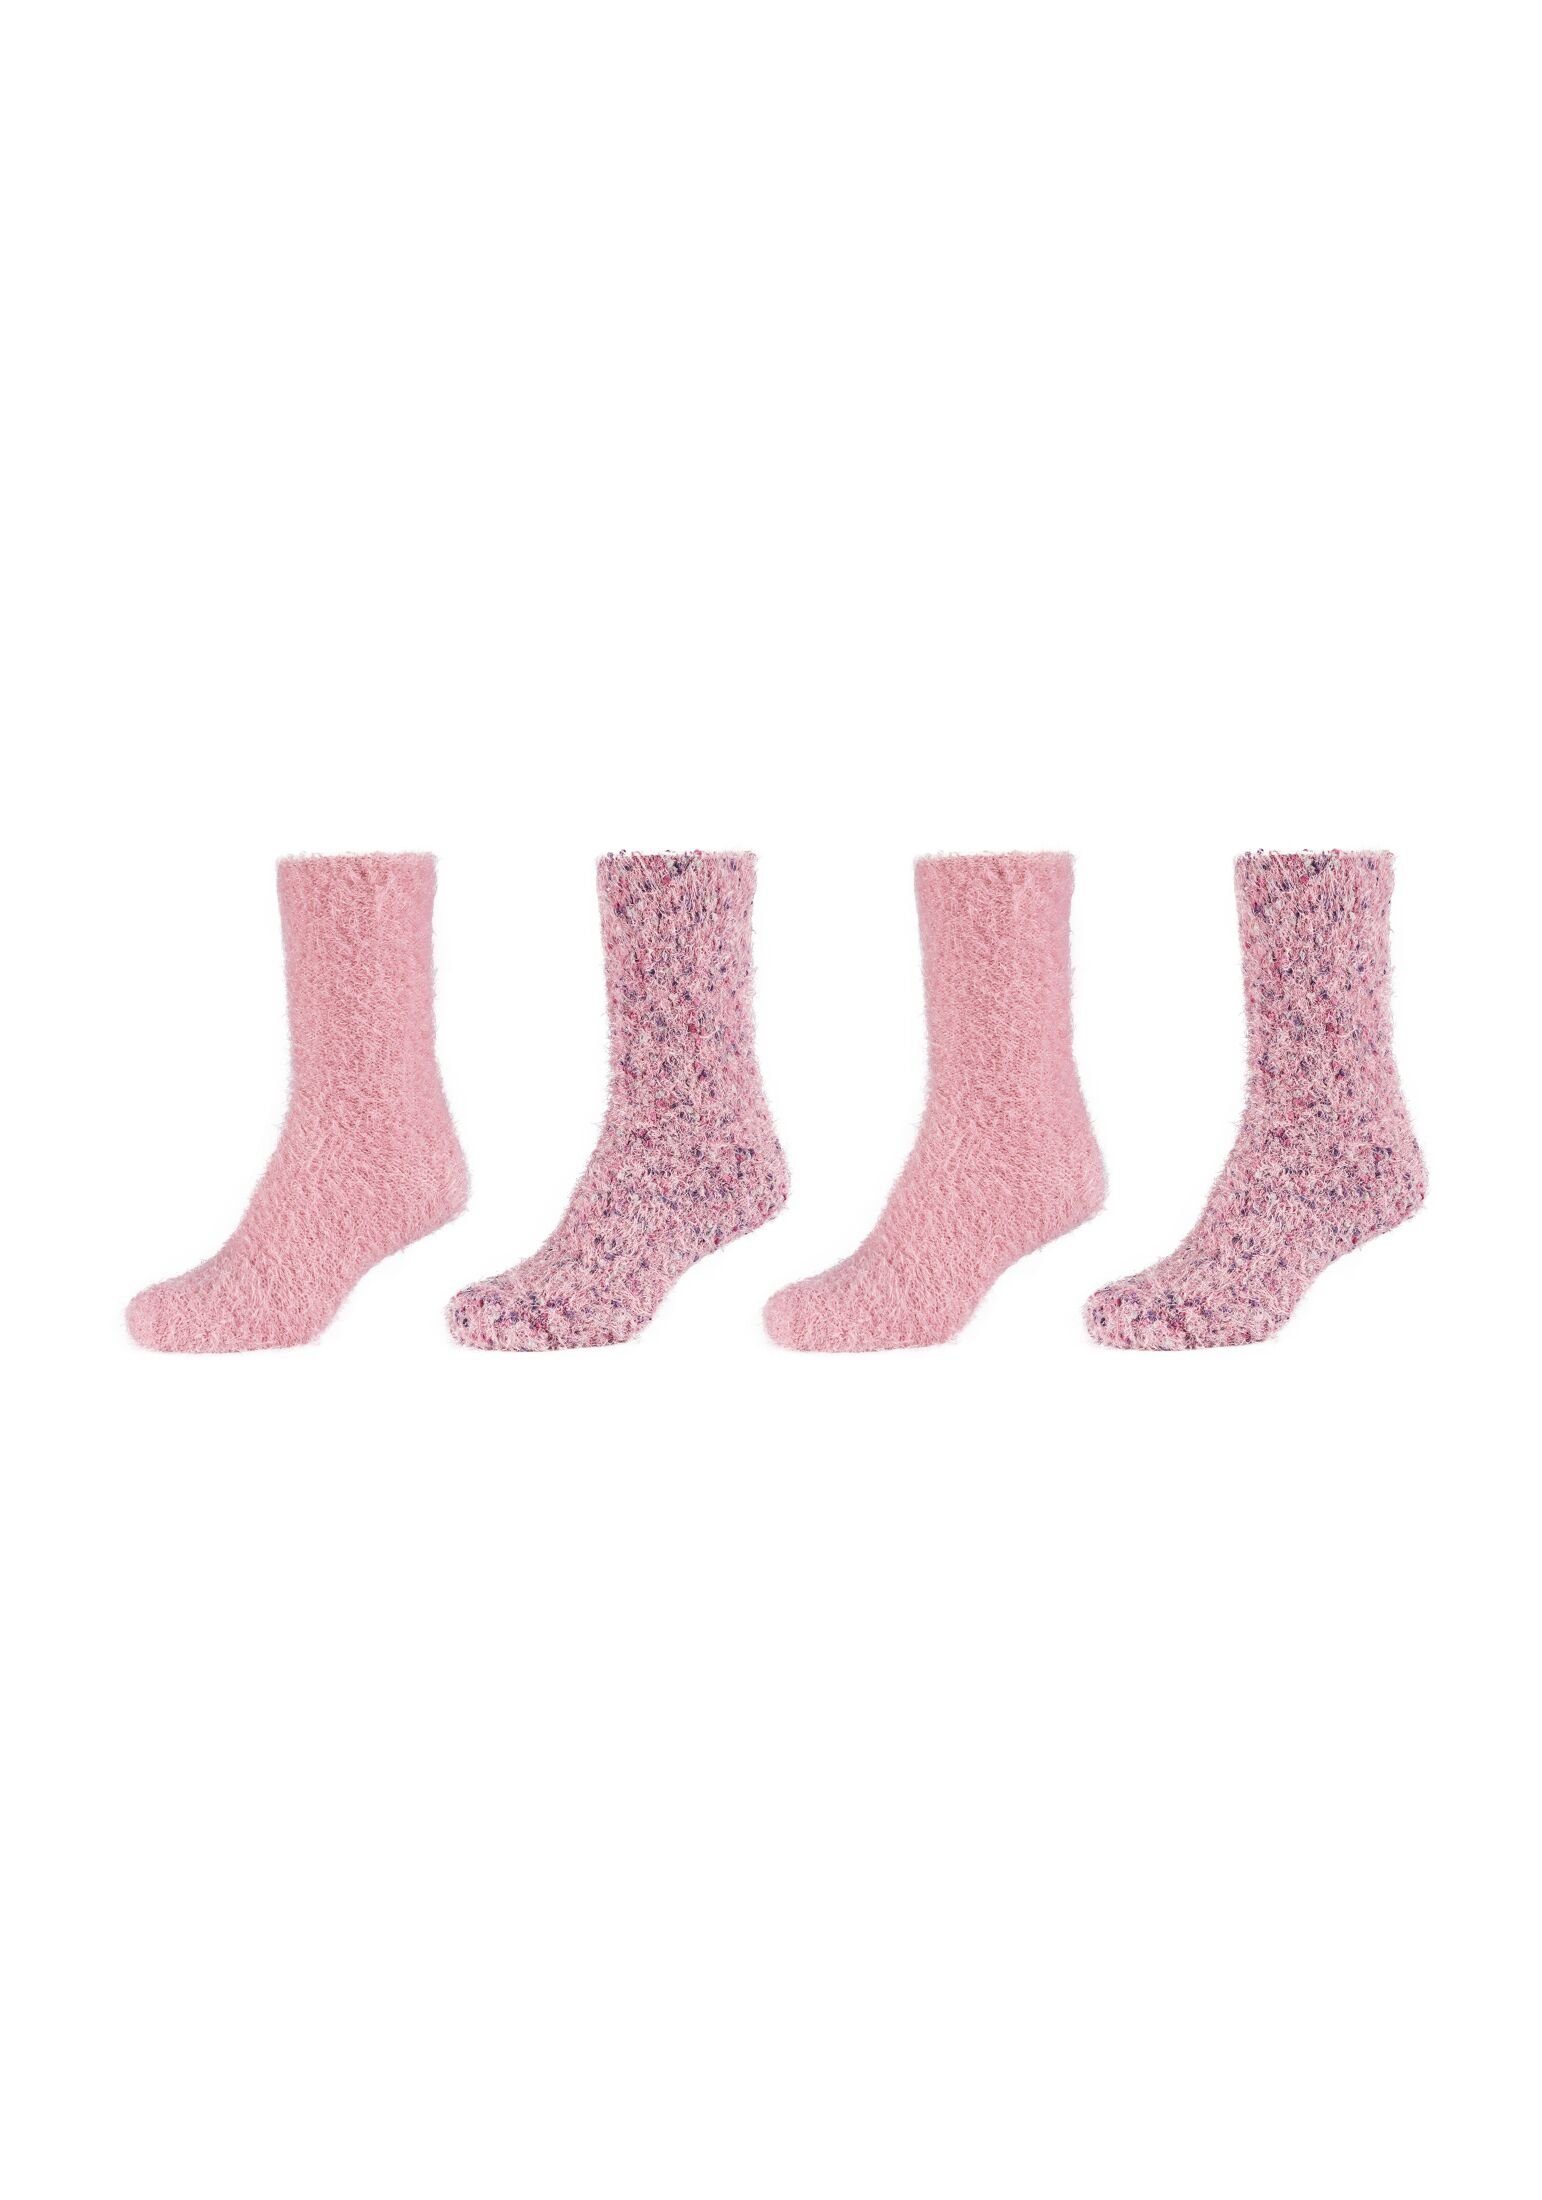 4er Socken Camano Pack dusty Socken rose